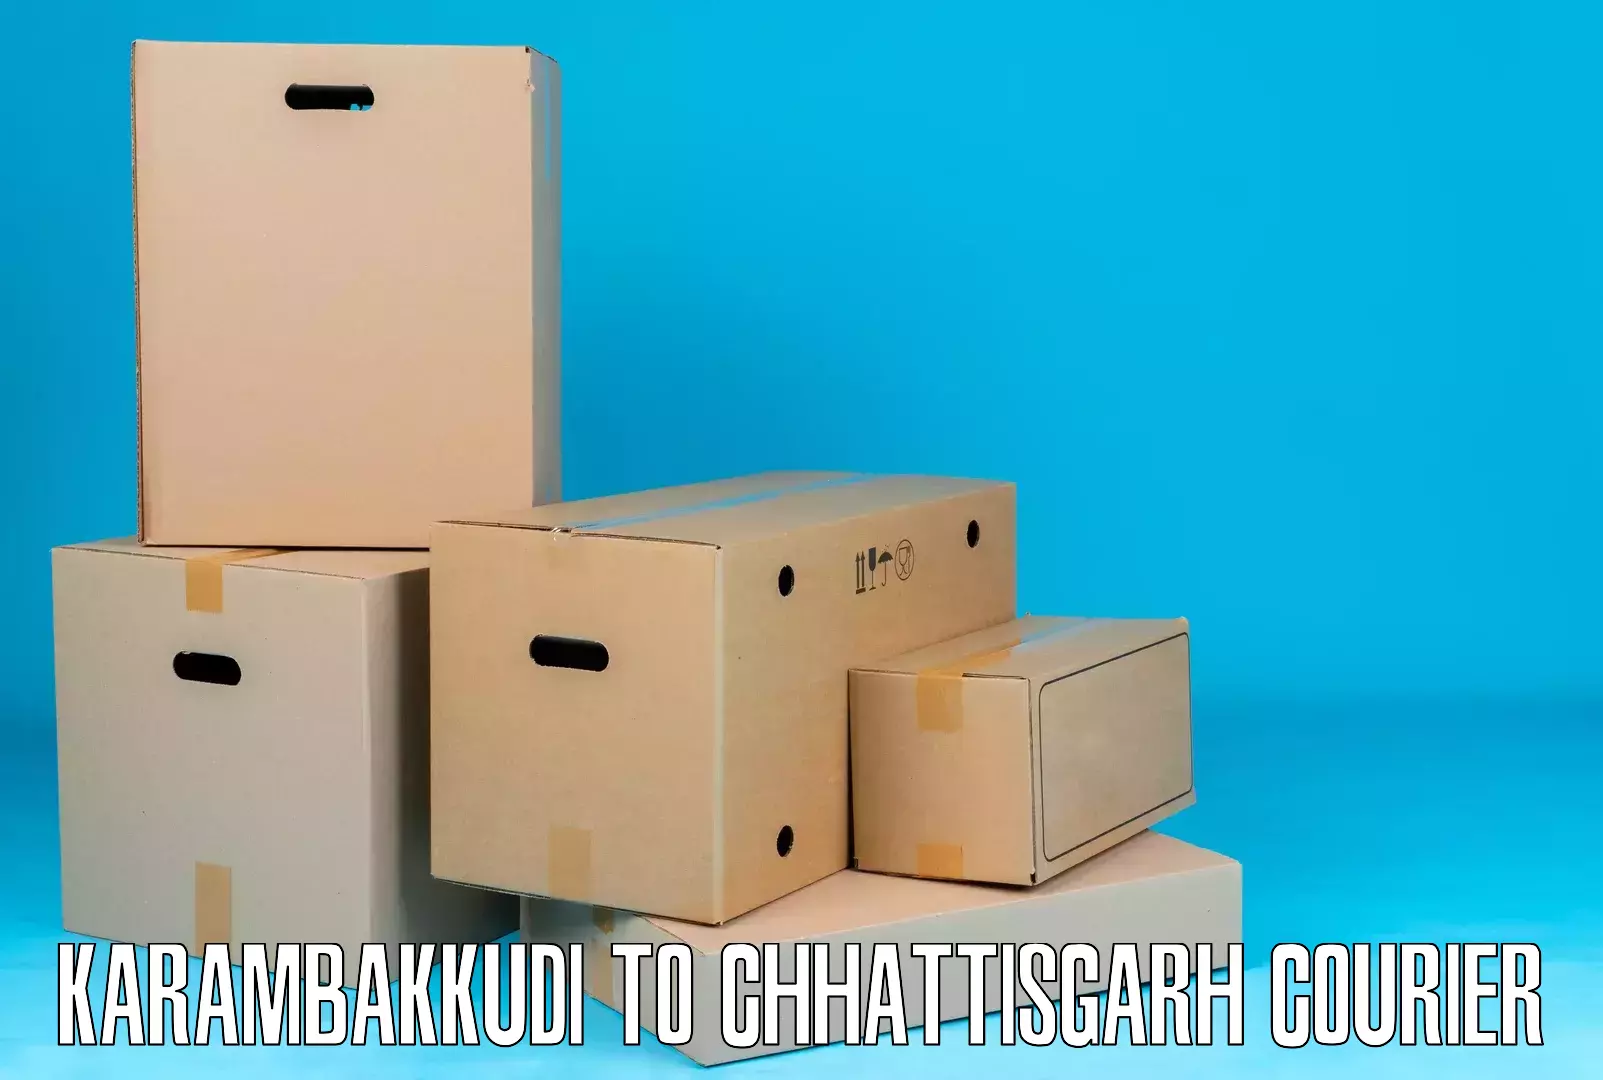 Diverse delivery methods Karambakkudi to bagbahra